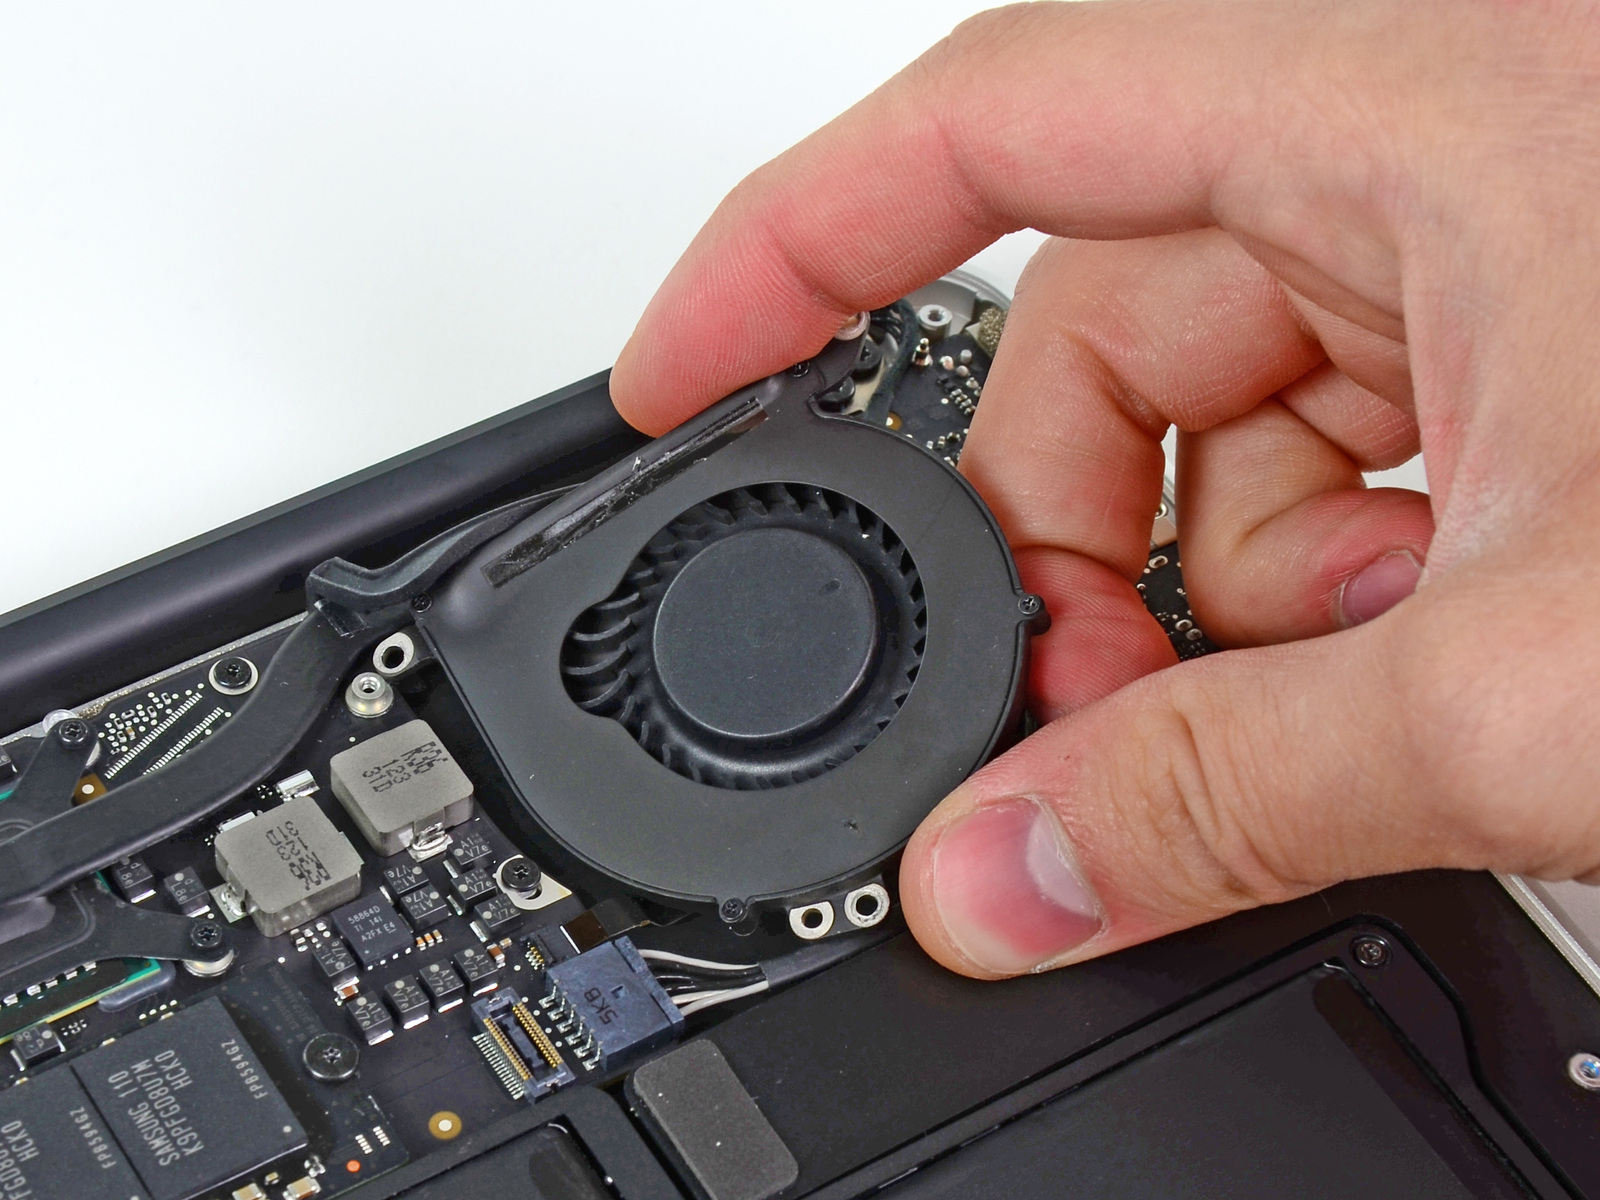 MacBook Air 13 "Mid 2011 Büyük Harf Değiştirme Adım 9 harfe fanını tutan aşağıdaki üç vidayı çıkarın: Bir 3.6 mm T5 Torx vida Bir 2.7 mm T5 Torx vida Bir 3.